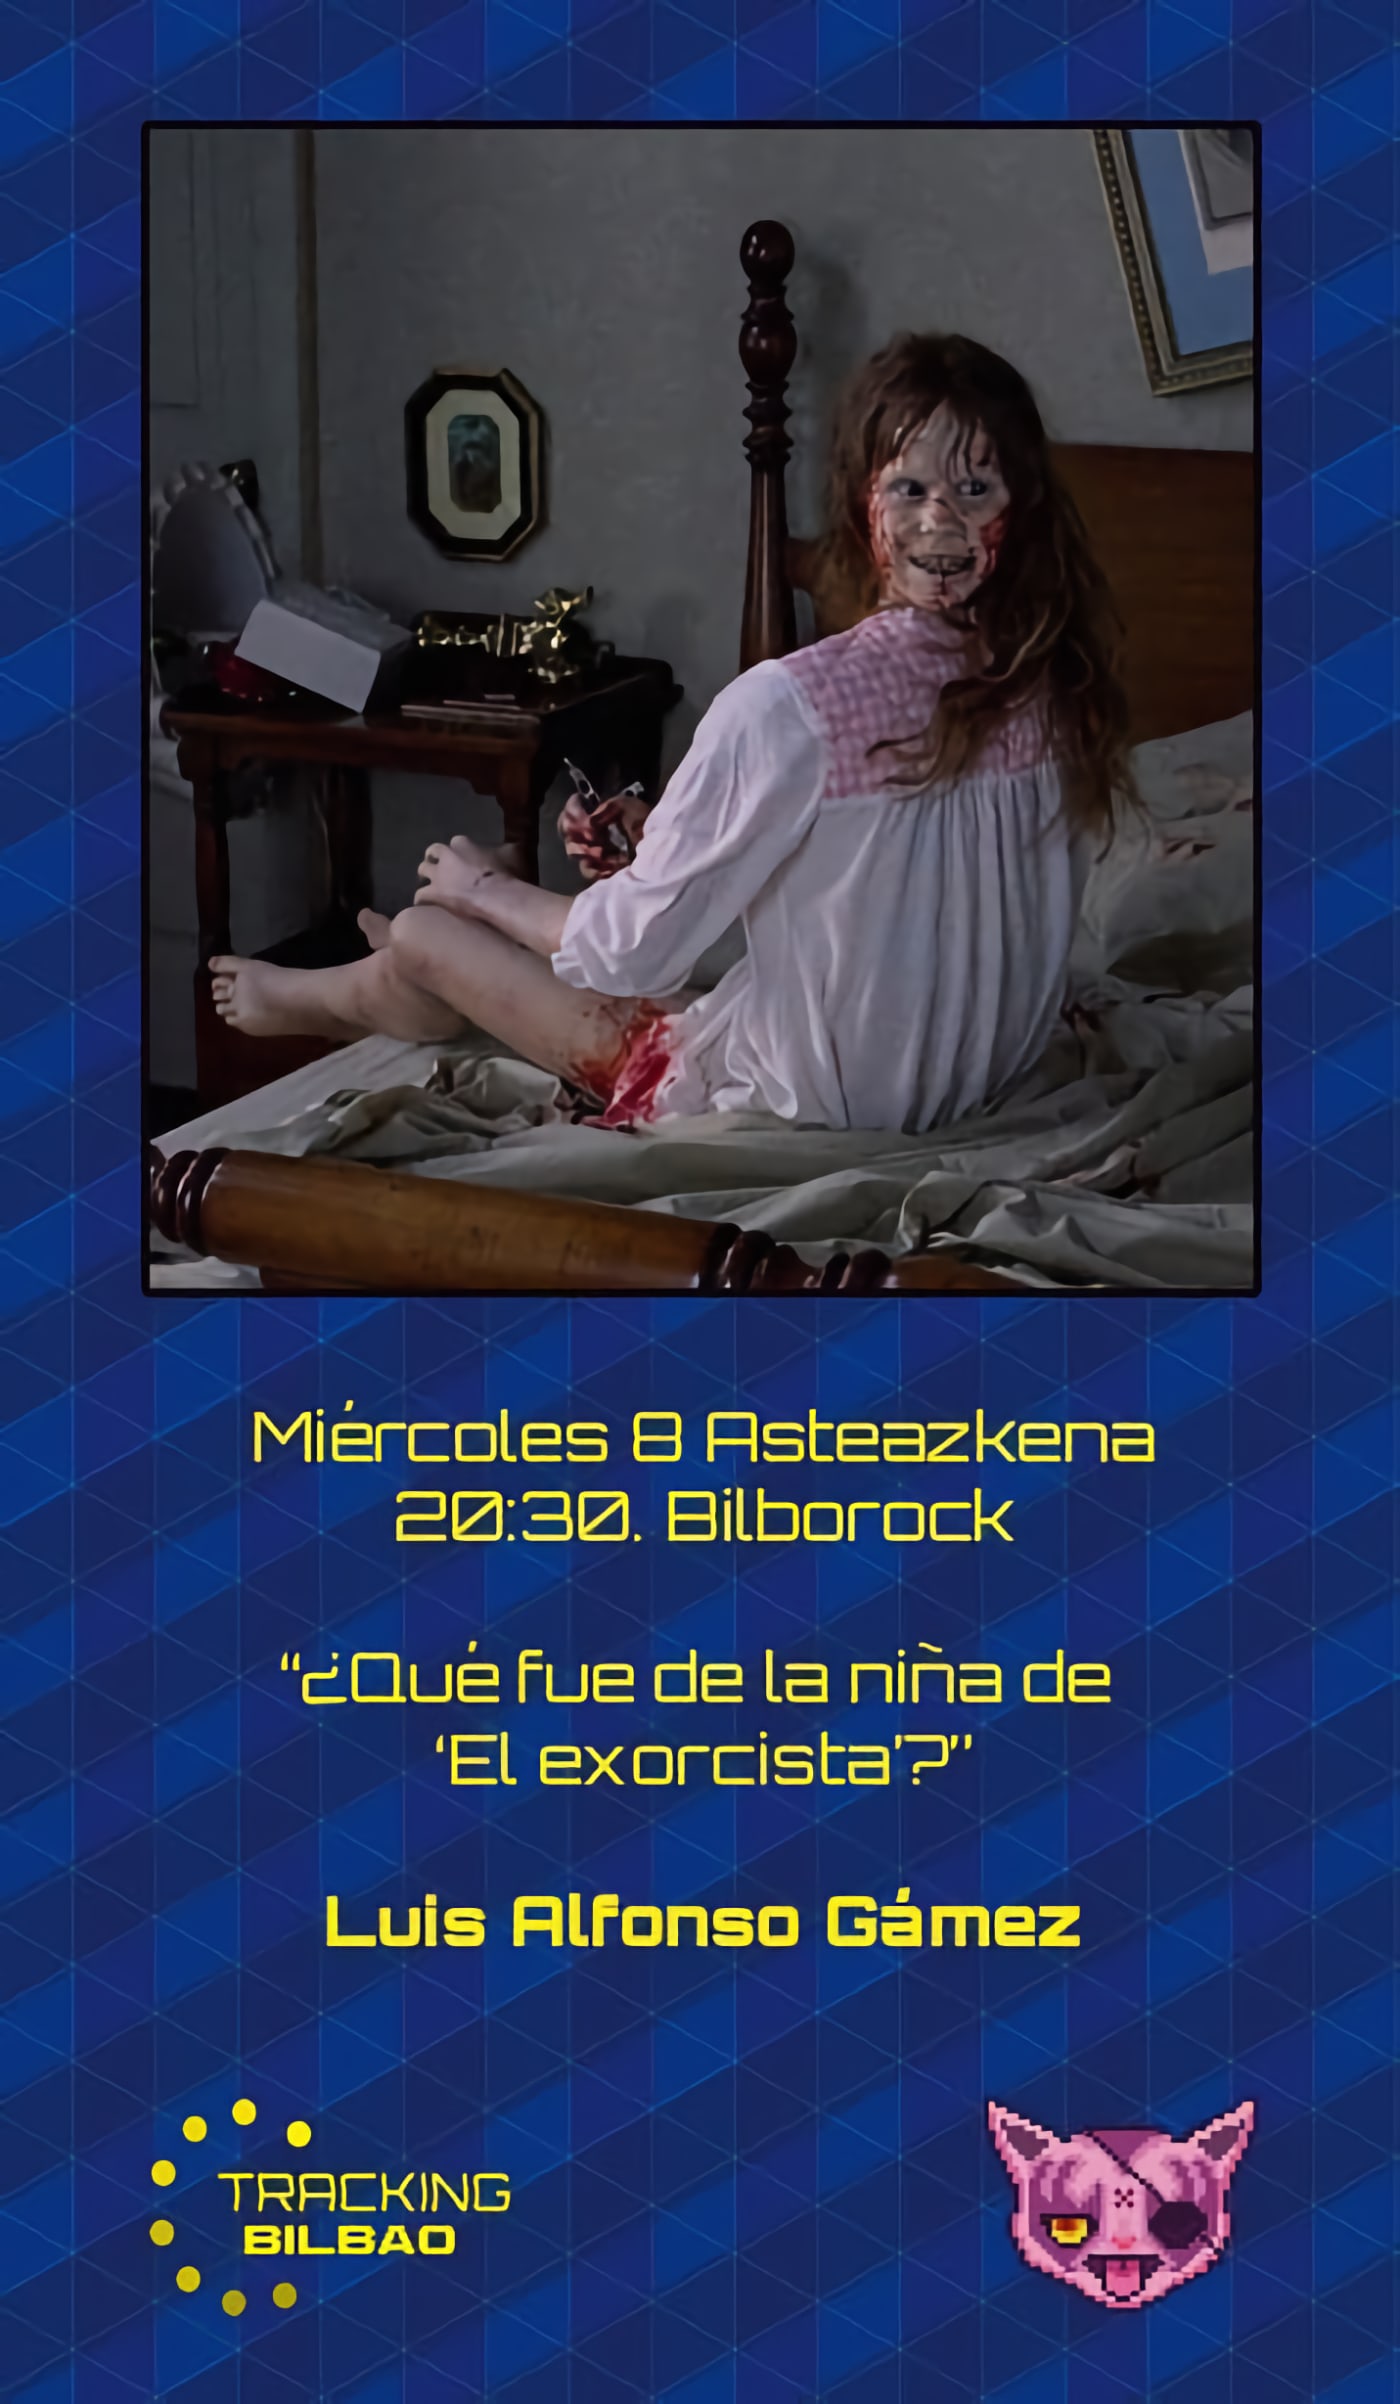 Cartel de la charla '¿qué fue de la niña de 'El exorcista'?'.